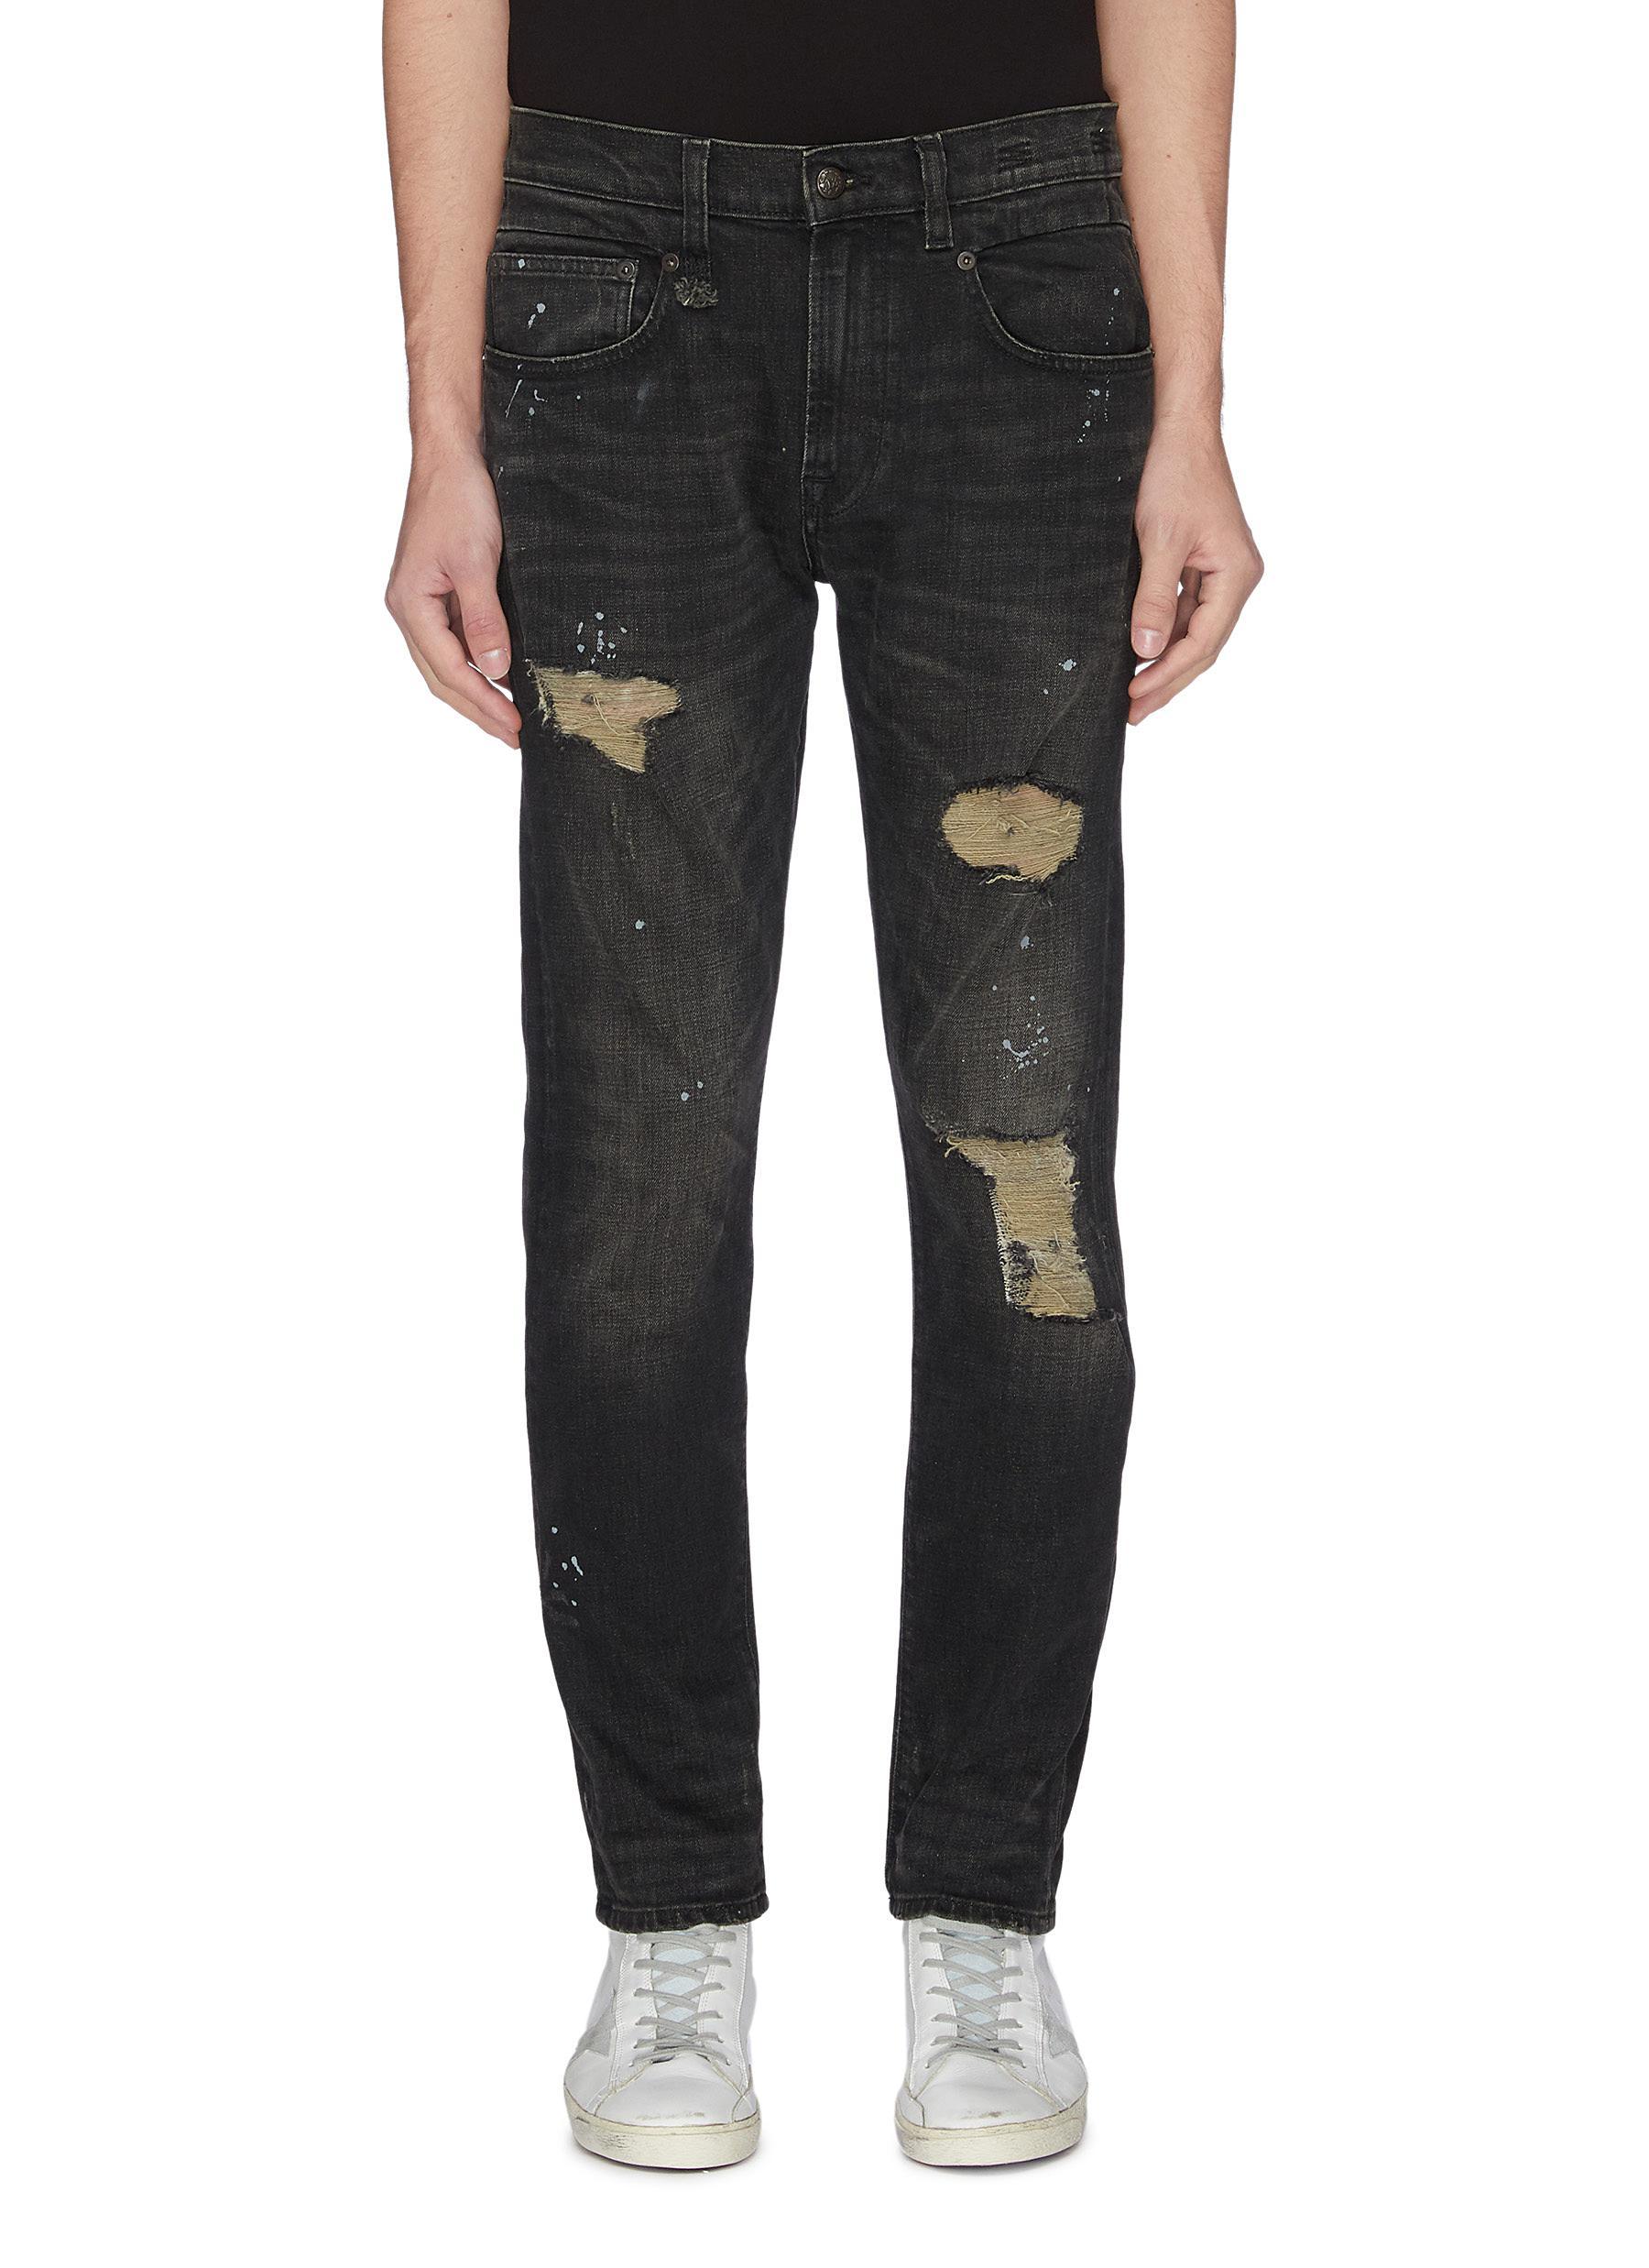 R13 Denim 'boy' Paint Splatter Ripped Skinny Jeans in Black for Men - Lyst